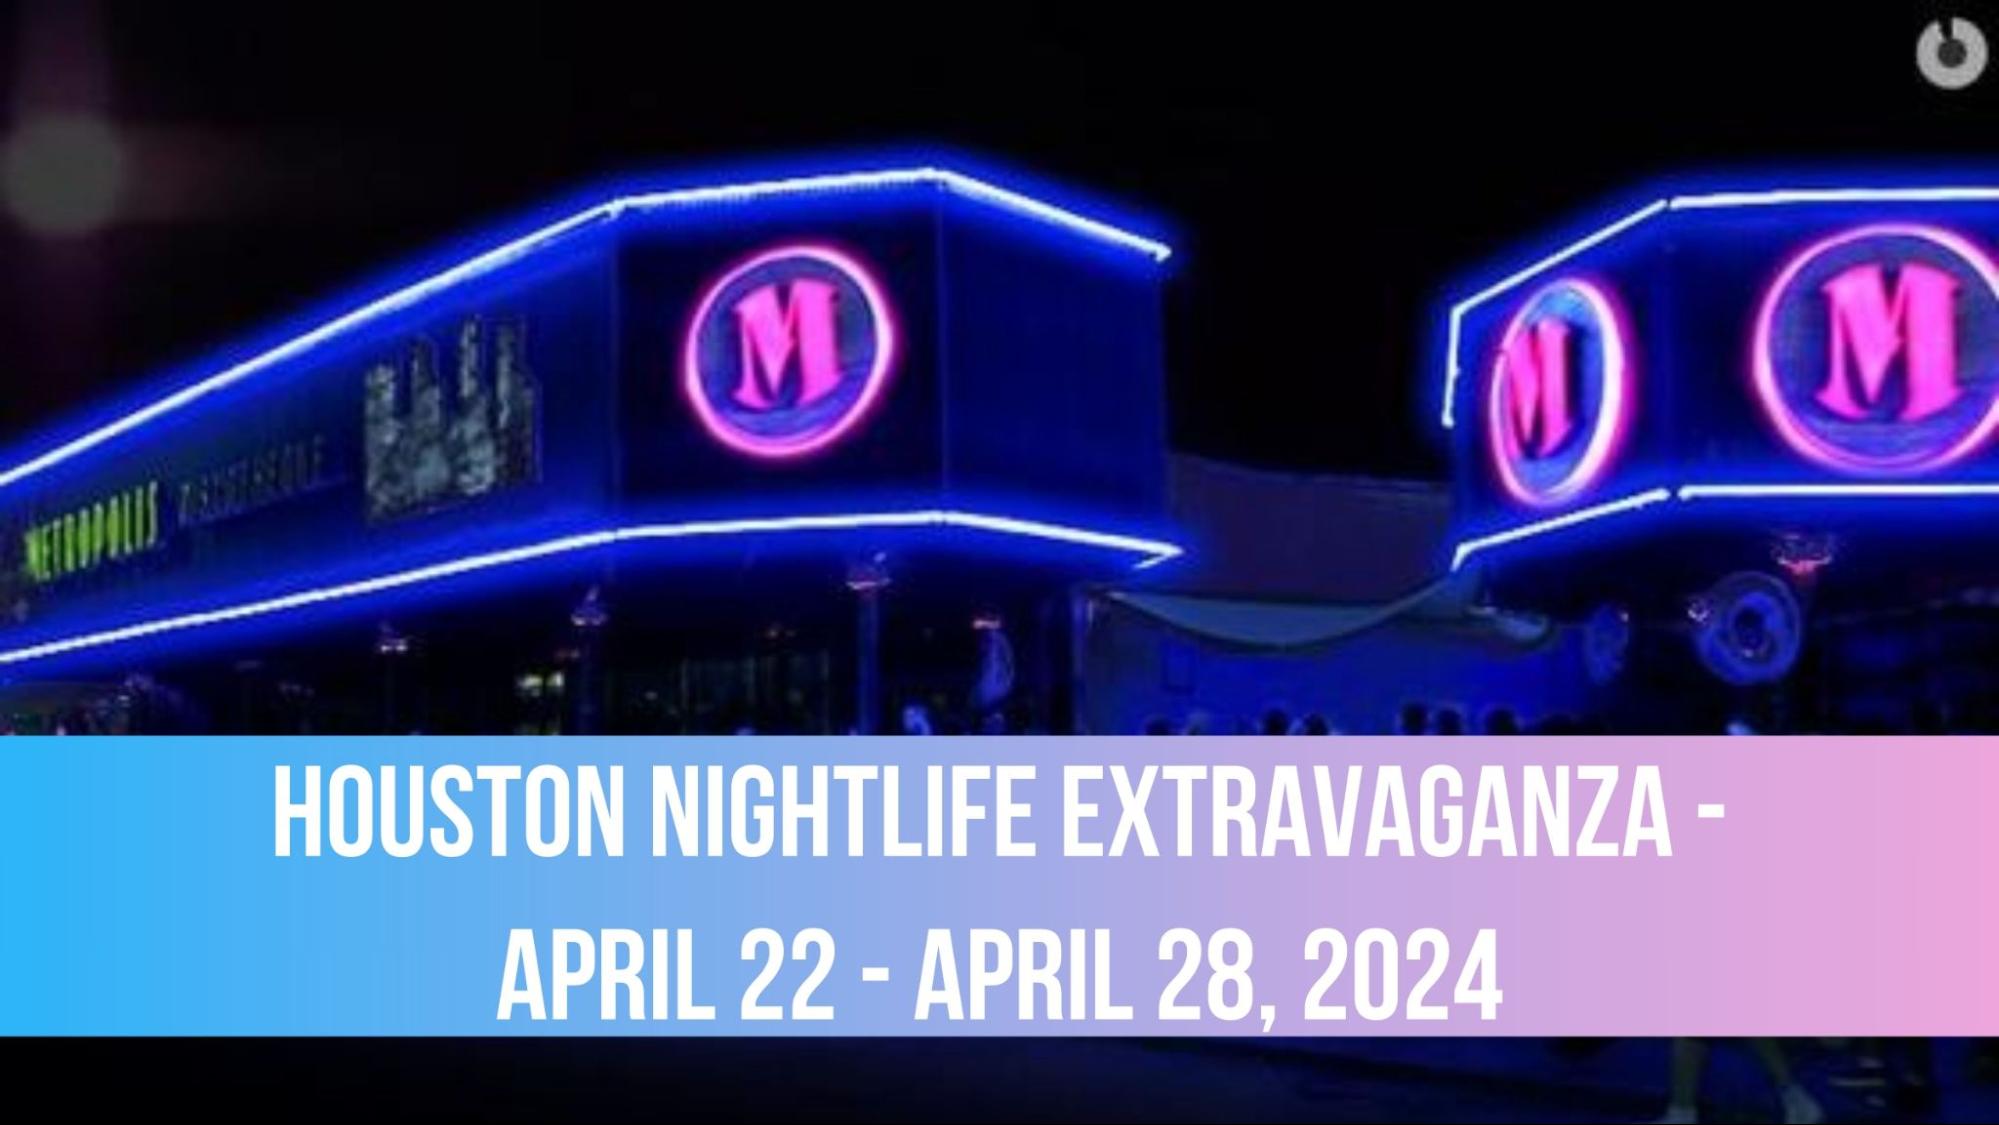 Houston Nightlife Extravaganza - April 22 - April 28, 2024